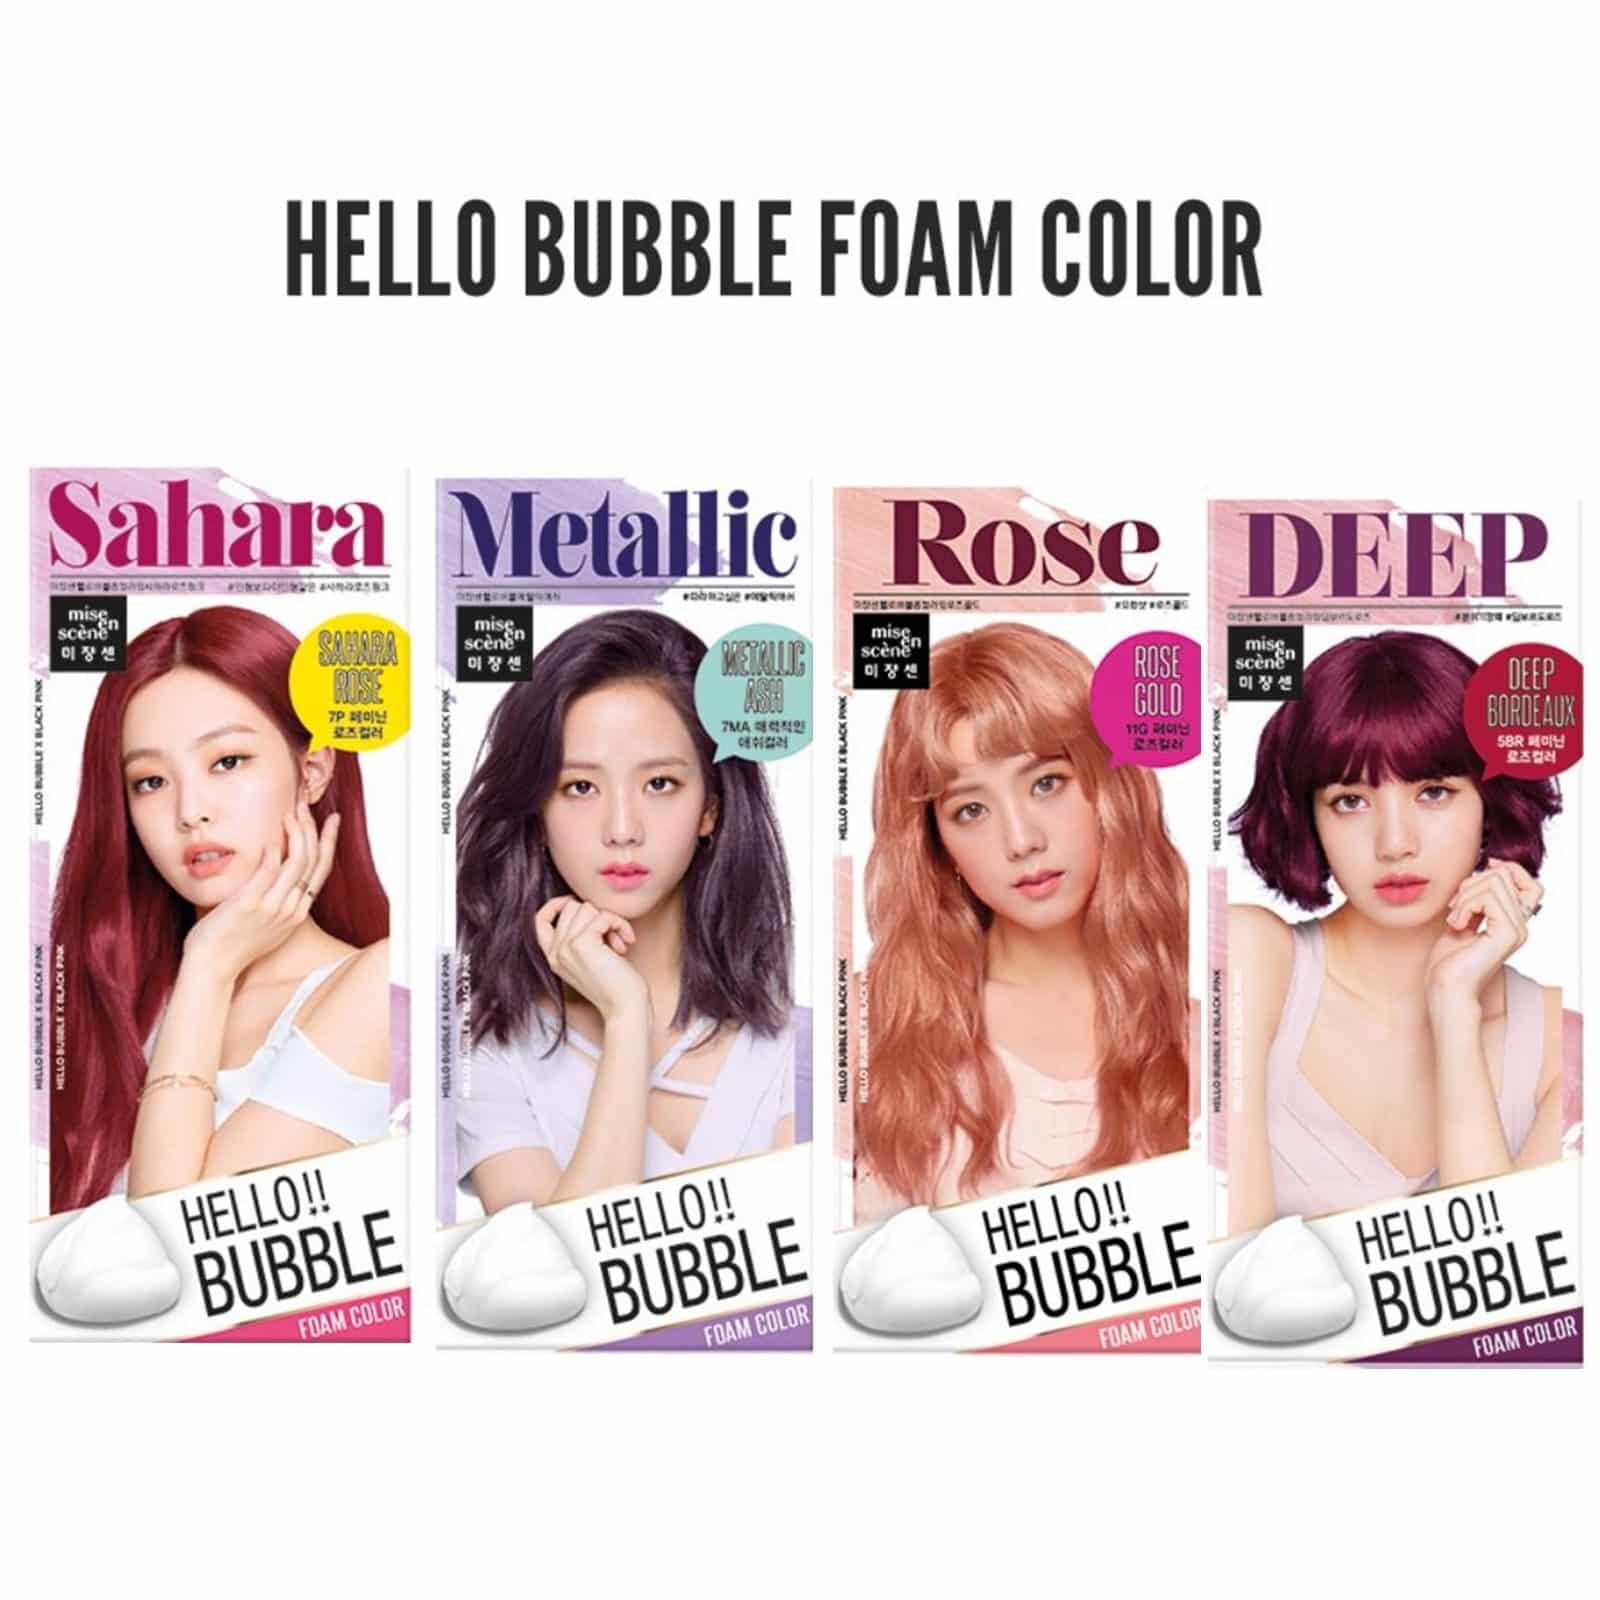 Hello Bubble Foam Color